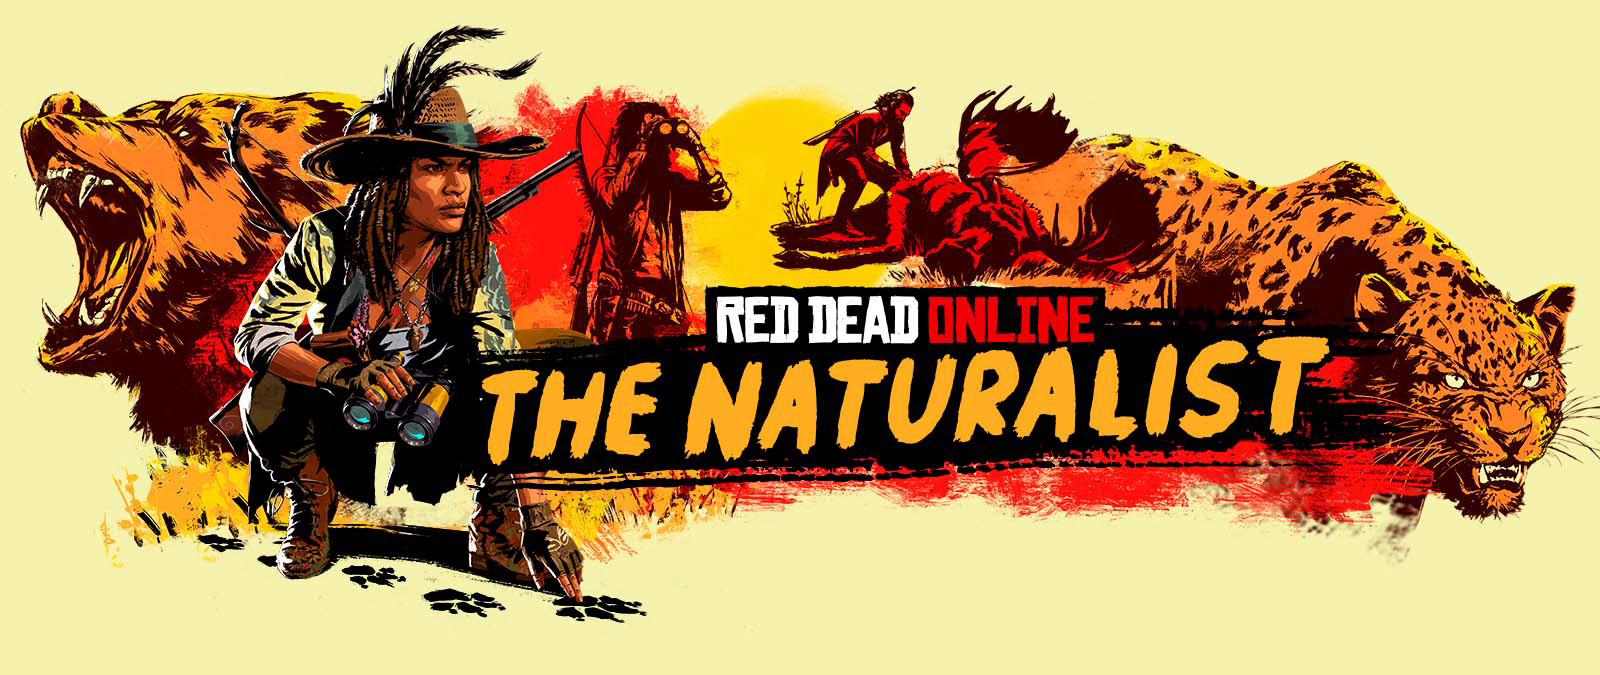 Red Dead Online. La Naturaliste. Des personnages traquent et chassent de grands animaux.